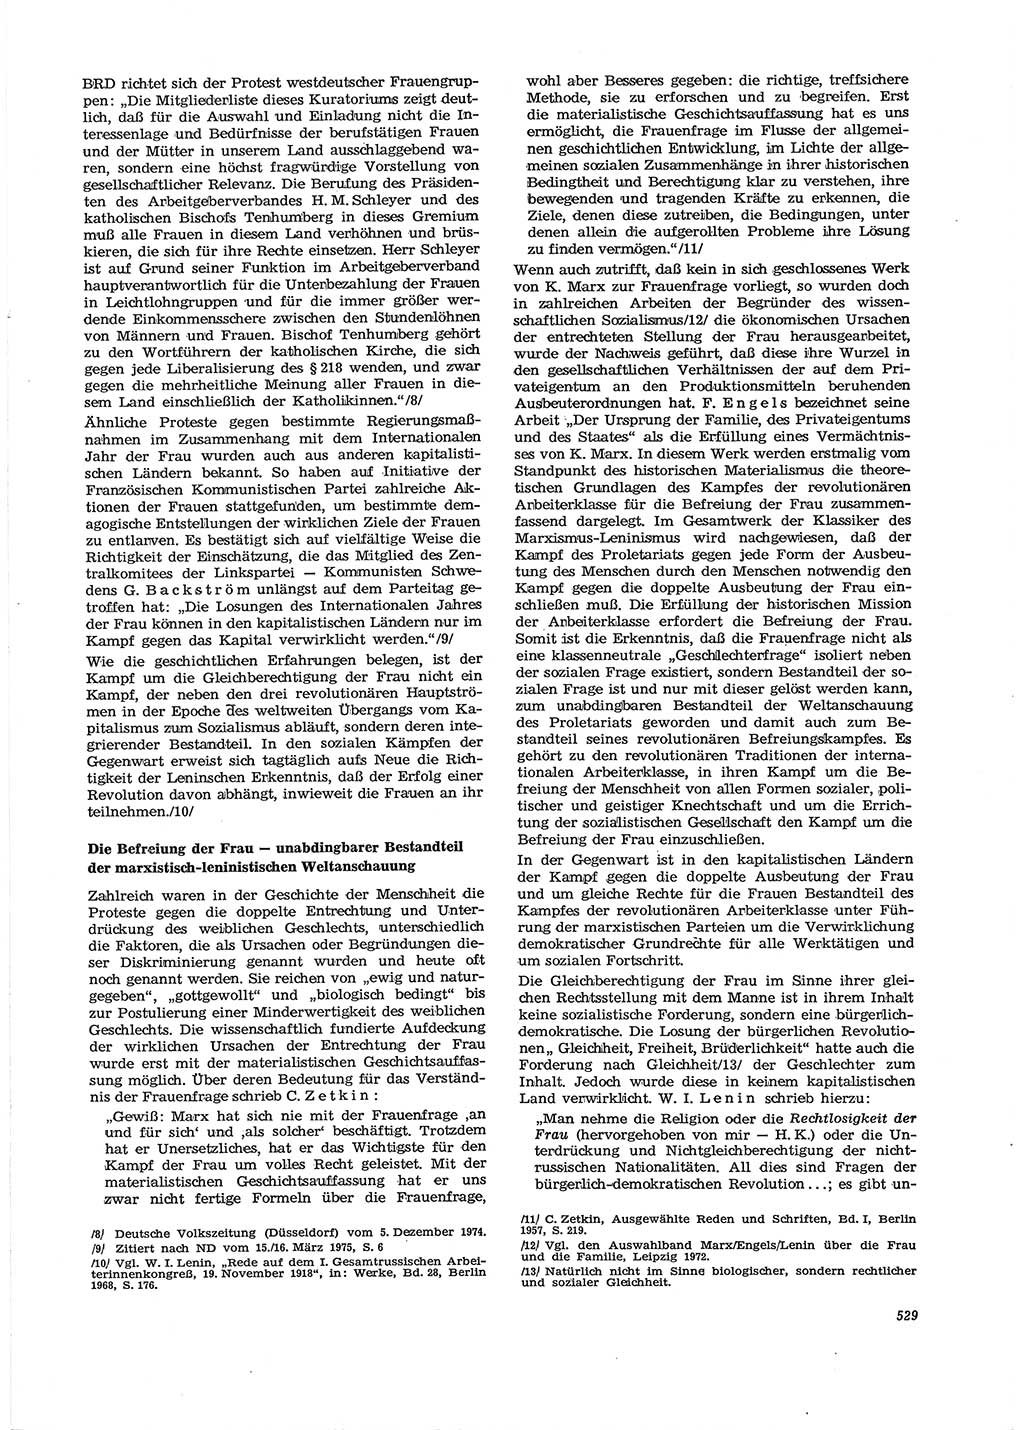 Neue Justiz (NJ), Zeitschrift für Recht und Rechtswissenschaft [Deutsche Demokratische Republik (DDR)], 29. Jahrgang 1975, Seite 529 (NJ DDR 1975, S. 529)